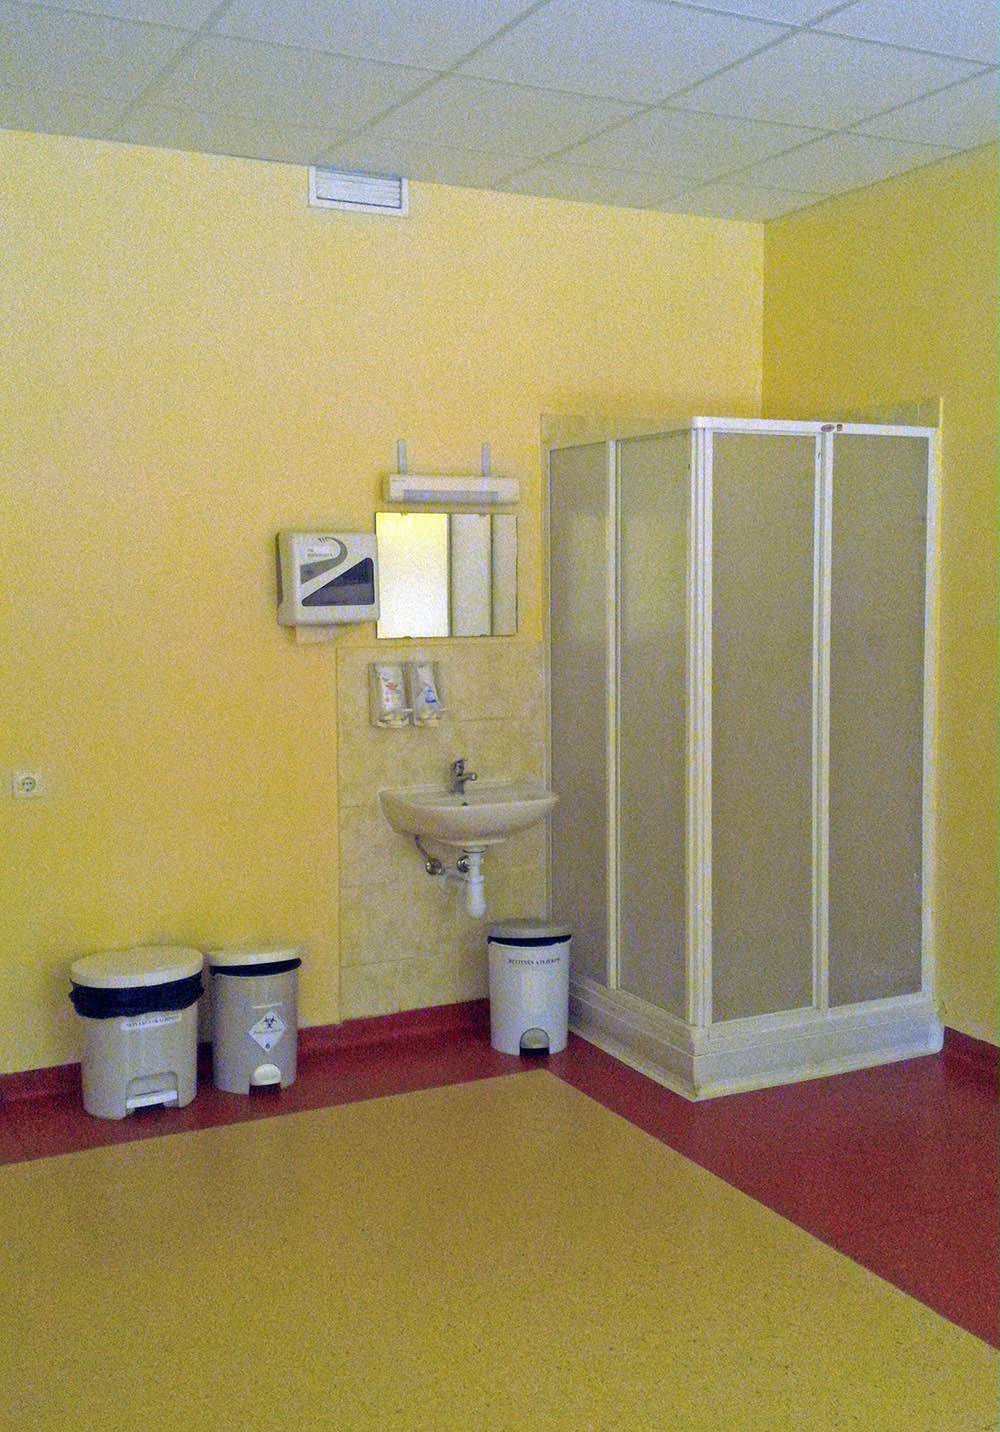 В родовых палатах есть душ — считается, что вода способствует расслаблению